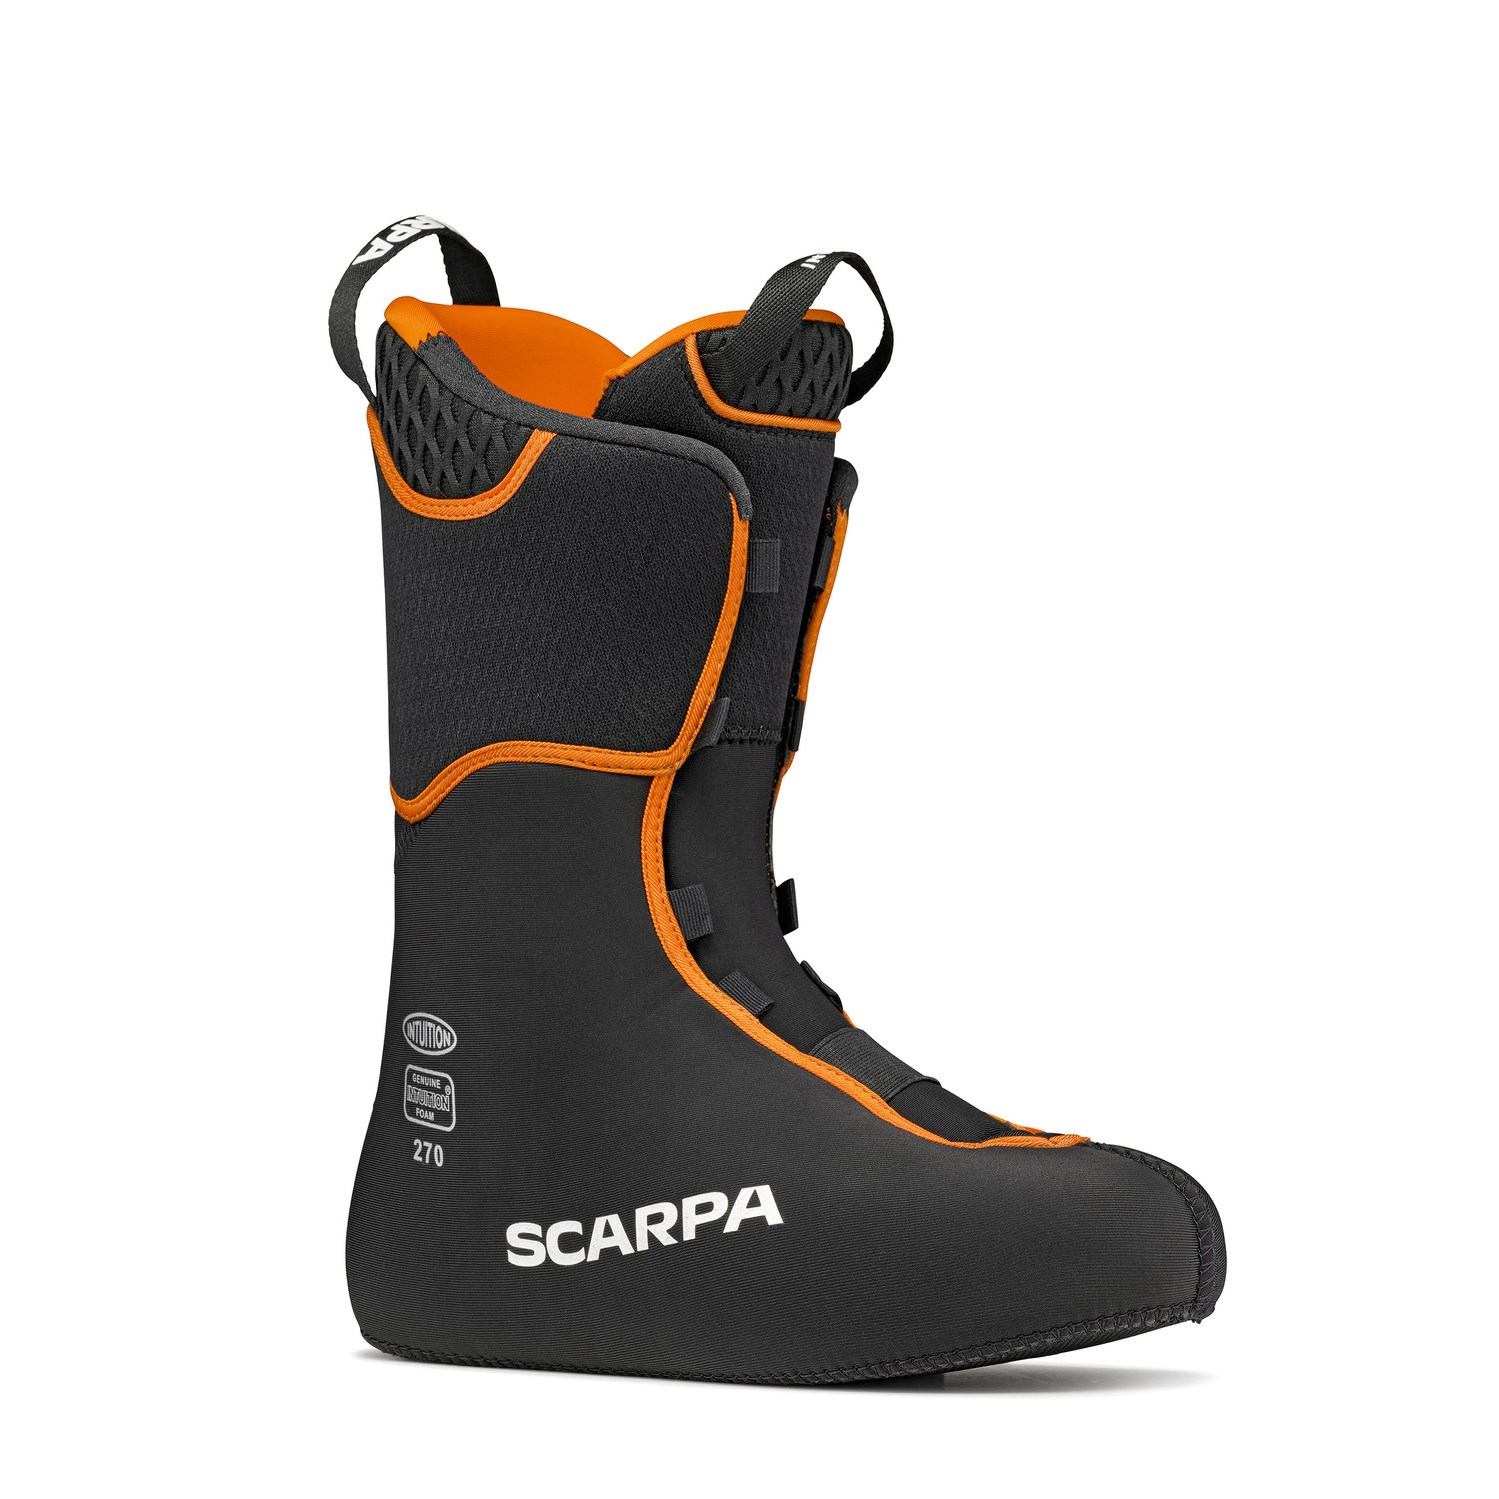 Skialpové boty Scarpa Maestrale orange/black Scarpa 10017263 L-11